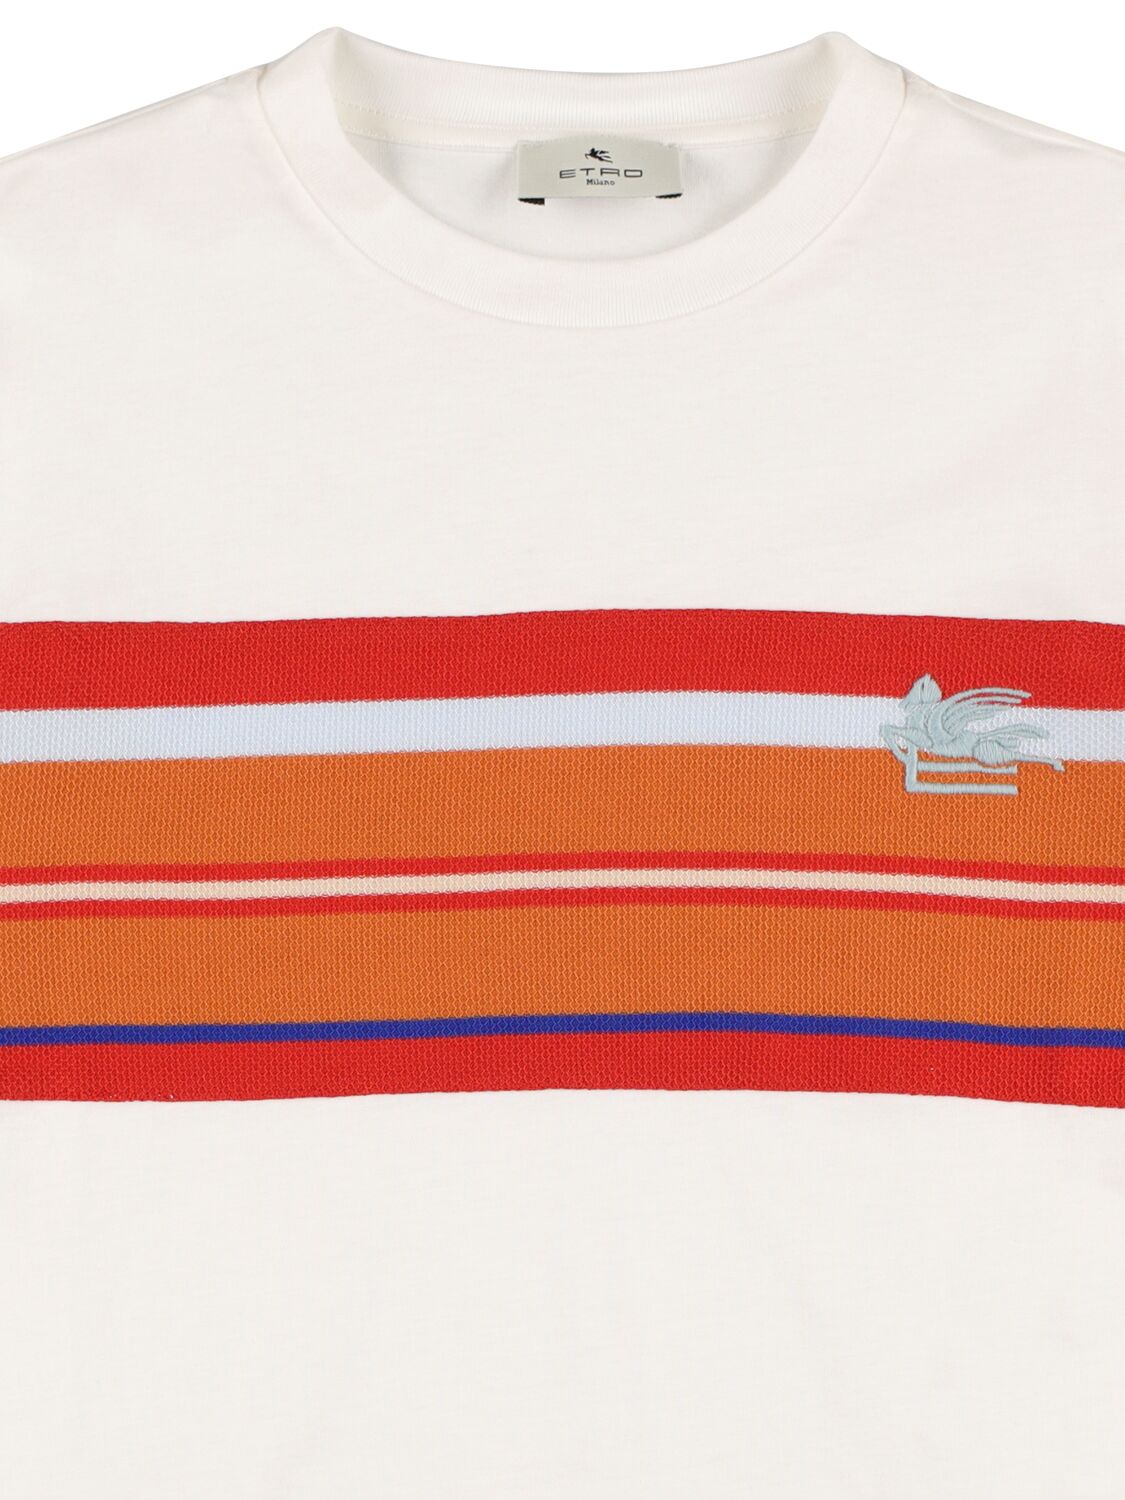 Shop Etro Cotton Jersey T-shirt In Ivory,orange